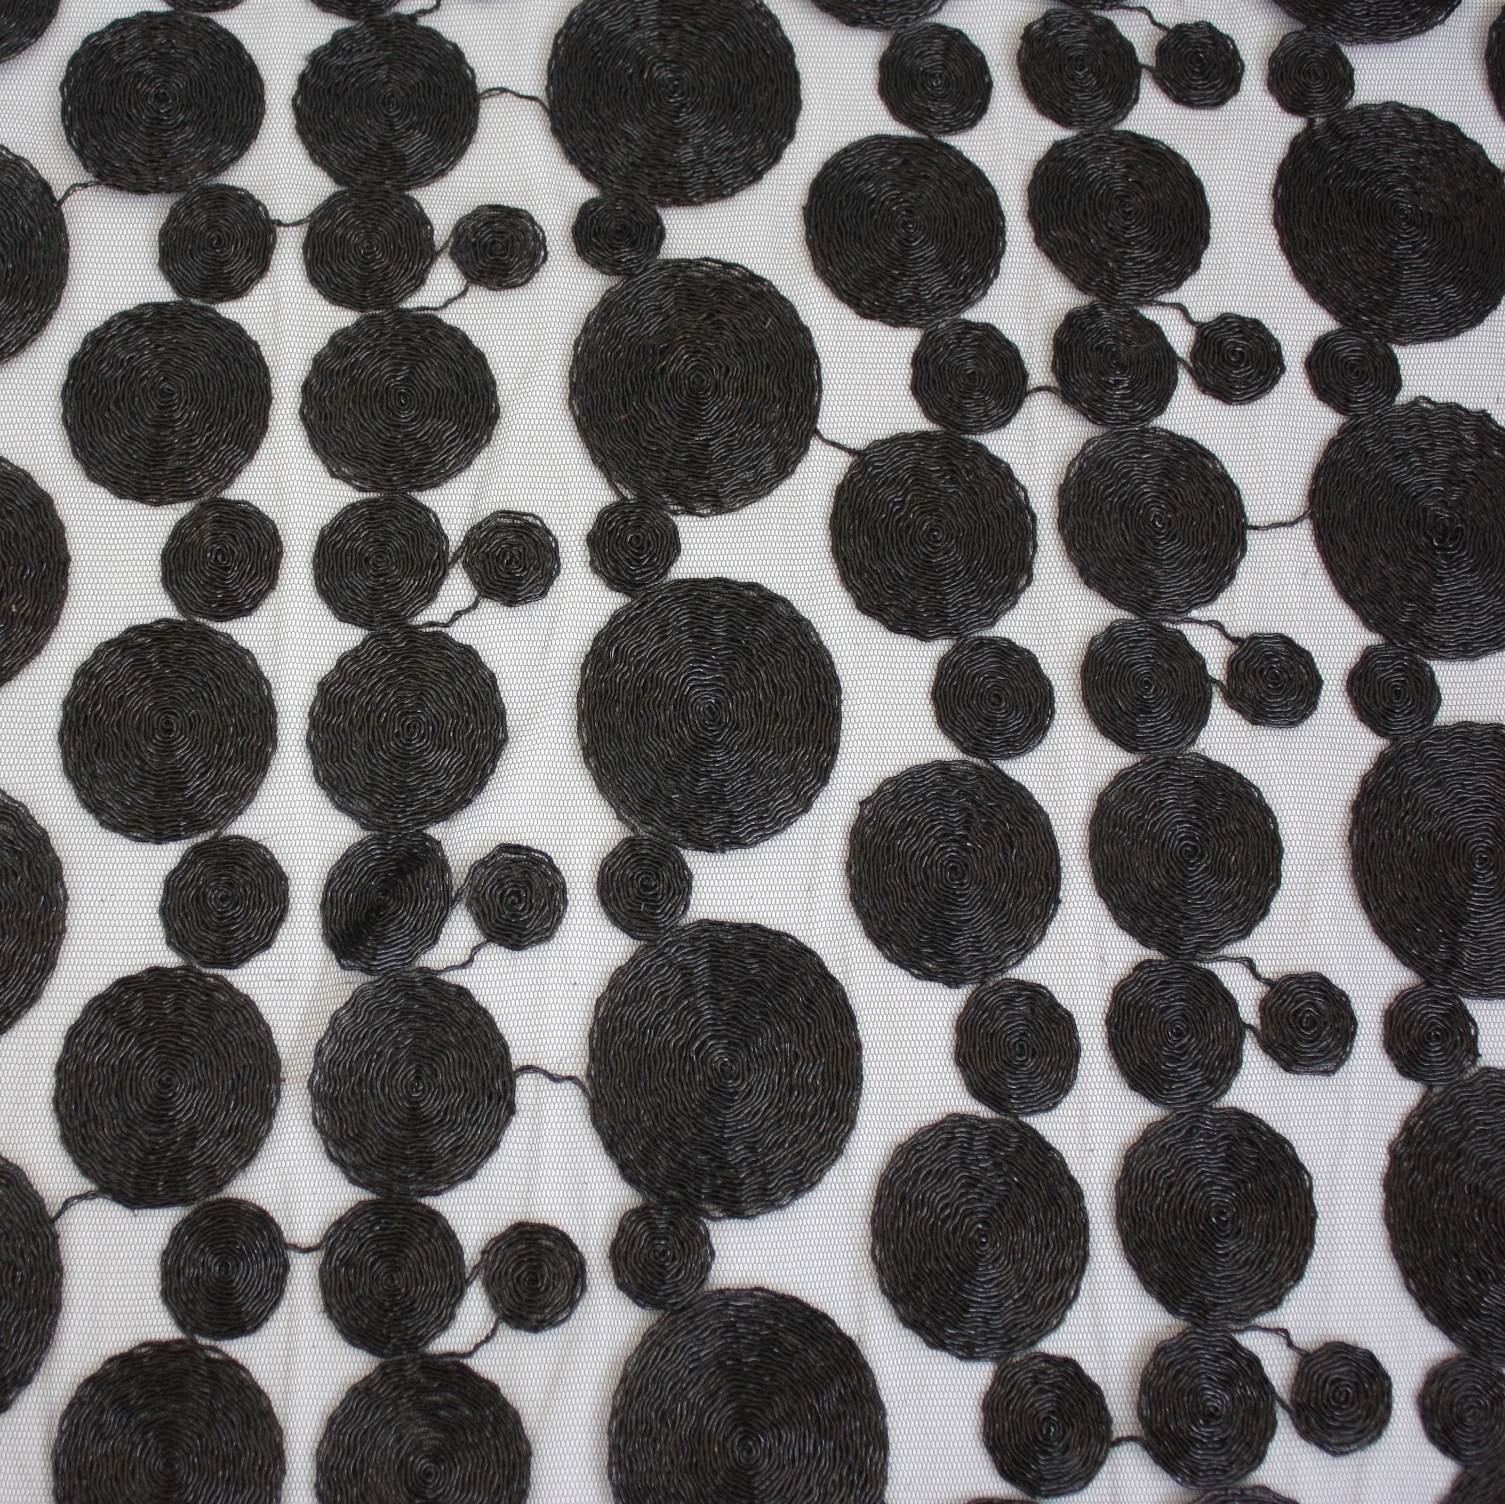 Black Metallic Coins Table Linen Rentals Tablecloth